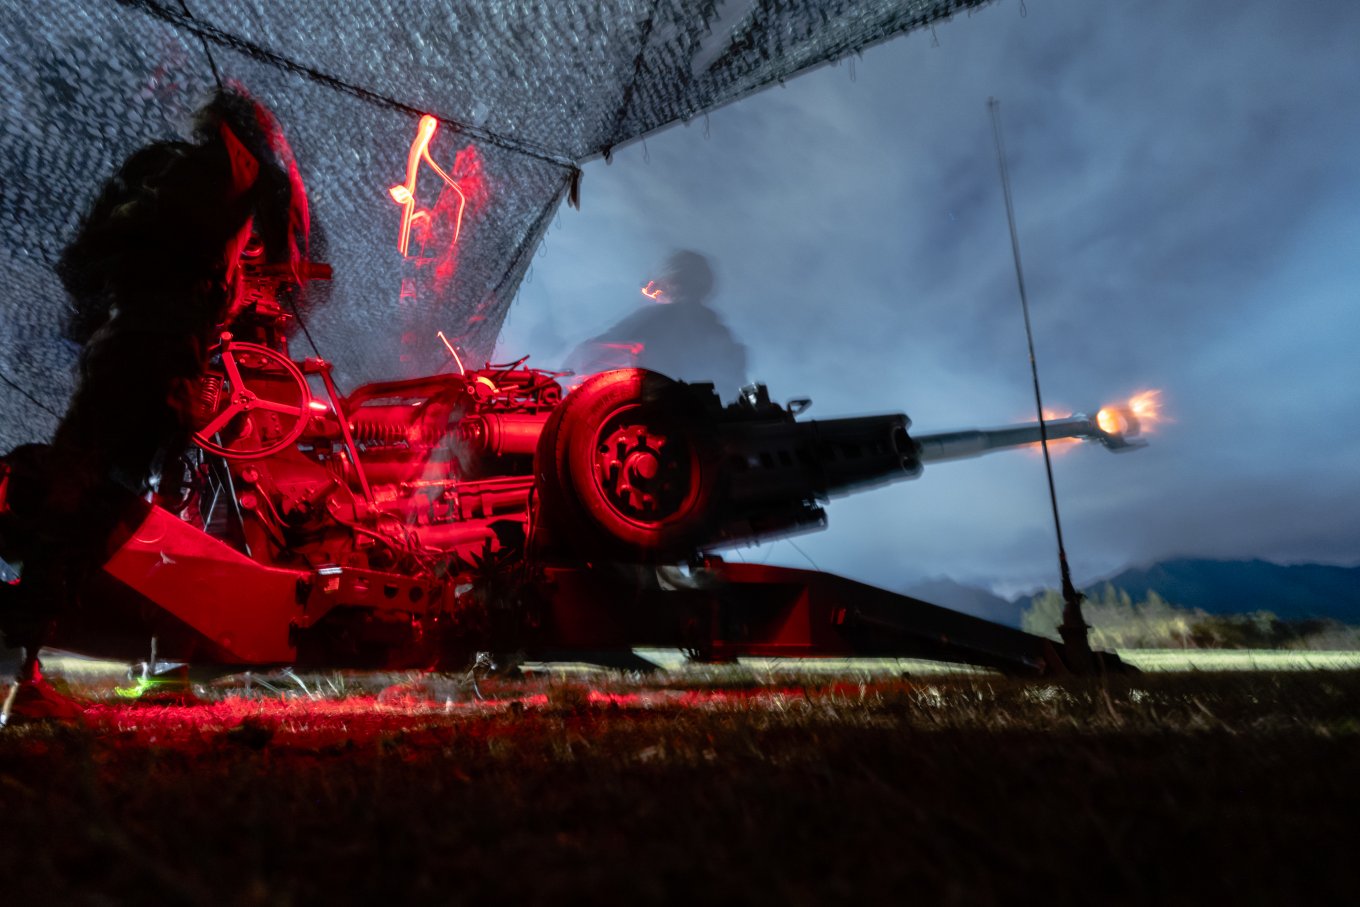 Over 50 units M777 Towed Howitzers in Ukraine, Next HIMARS or M270 – Washington Post, Defense Express, war in Ukraine, Russian-Ukrainian war